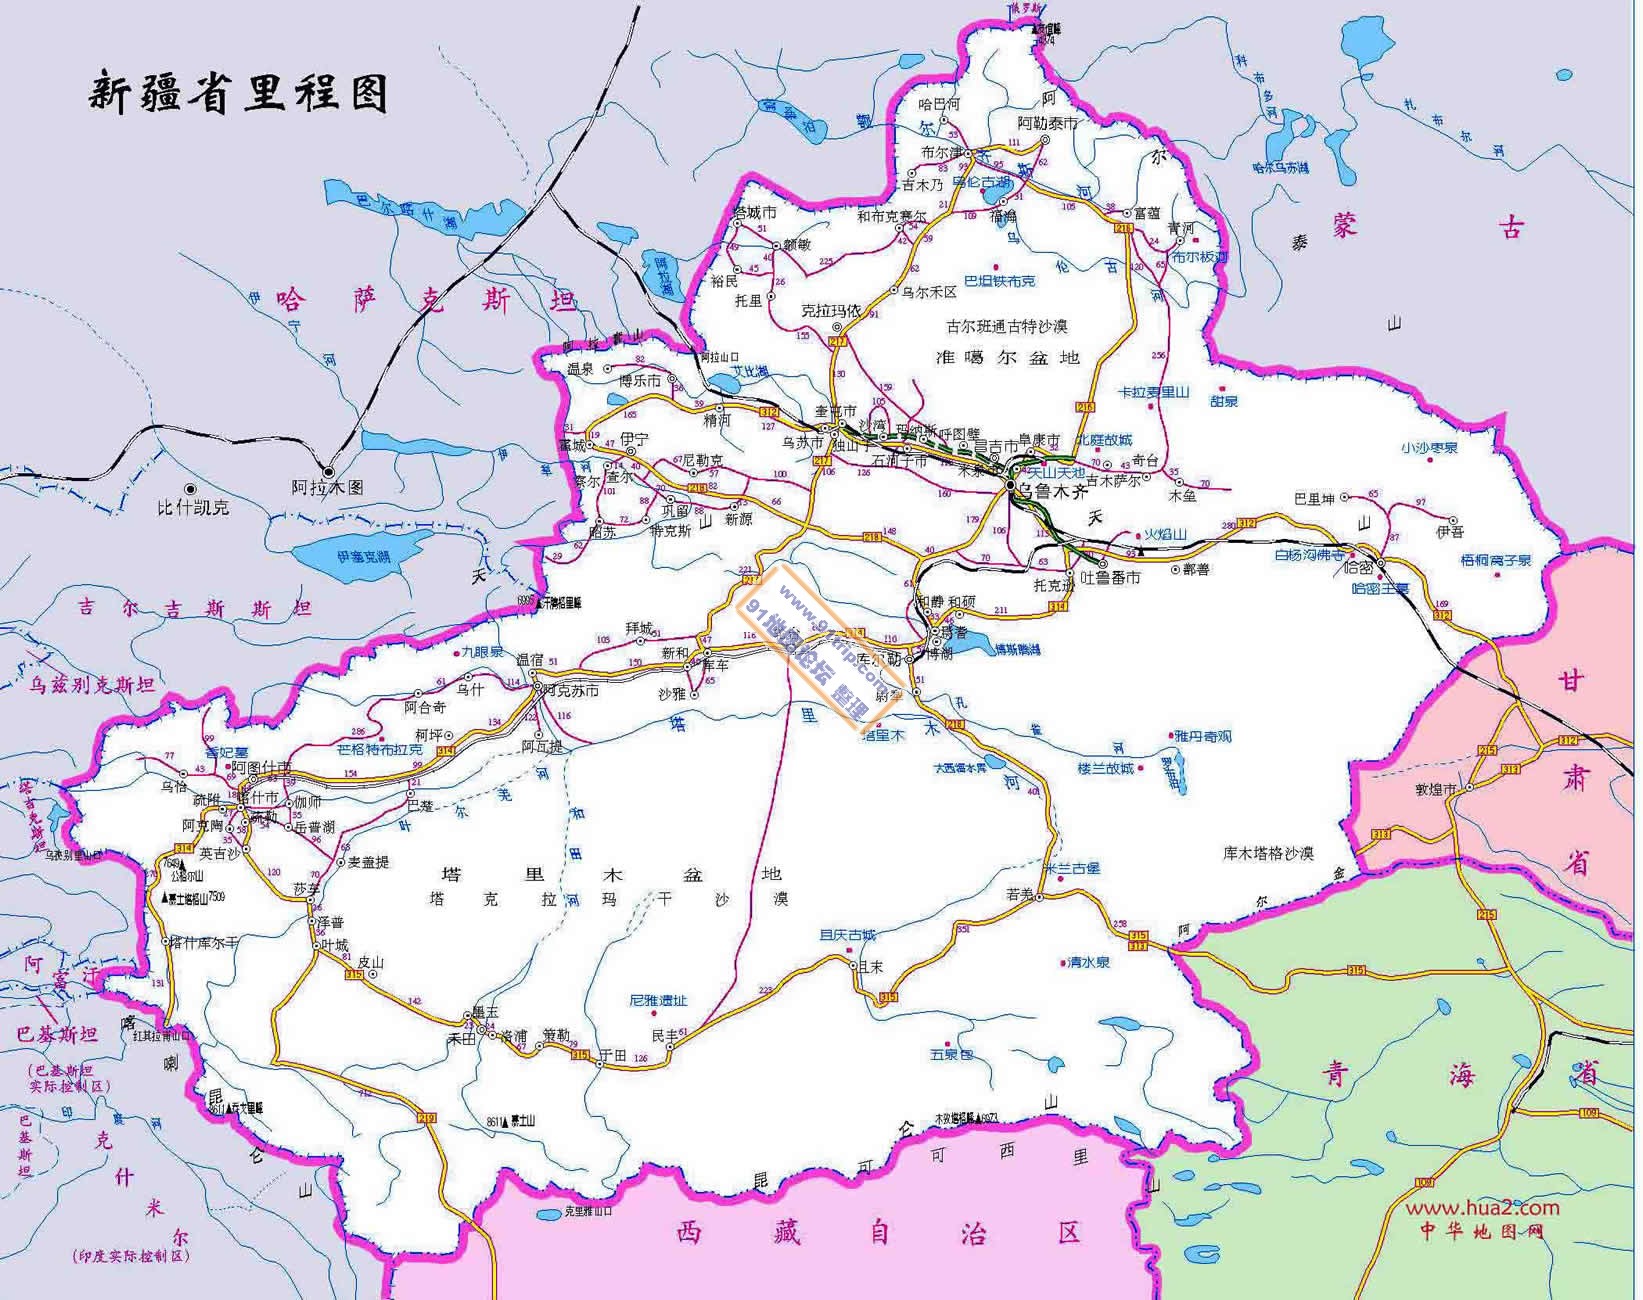 答:新疆旅游官方网站只有新疆维吾尔自治区的网站,不知道你要了解哪